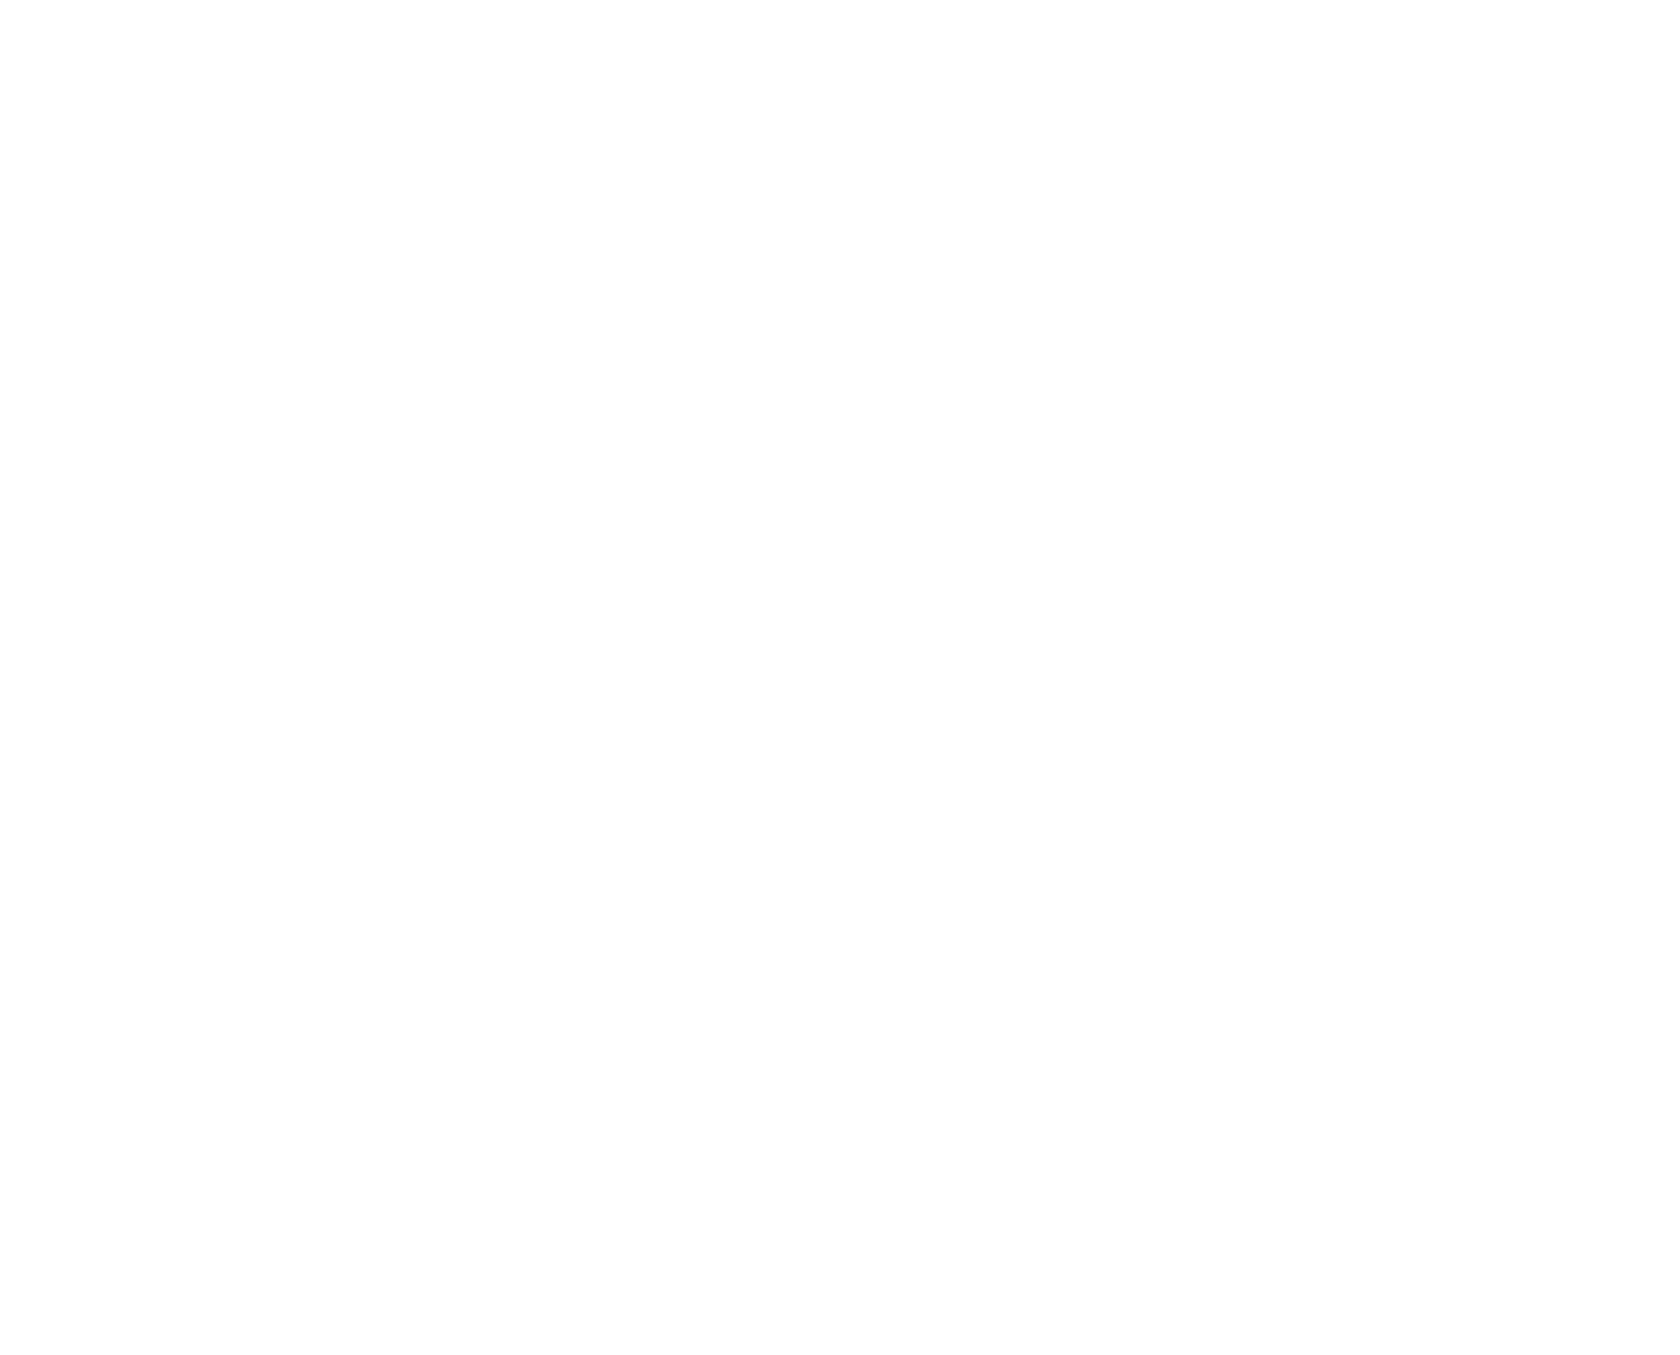 Special Blend Gravel camp